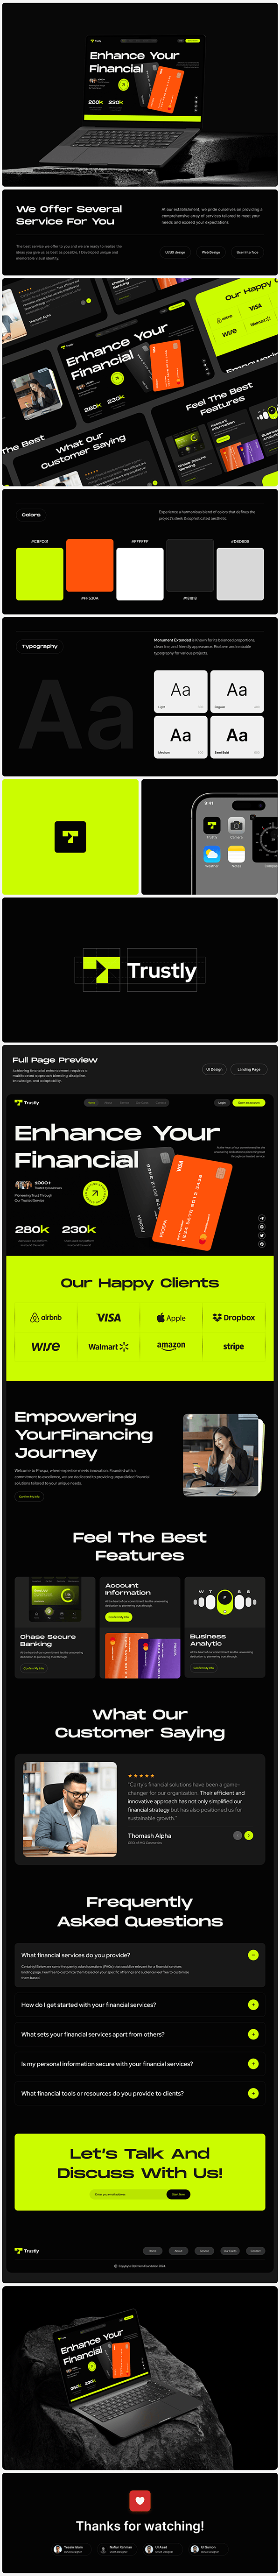 Fintech Banking Website Design